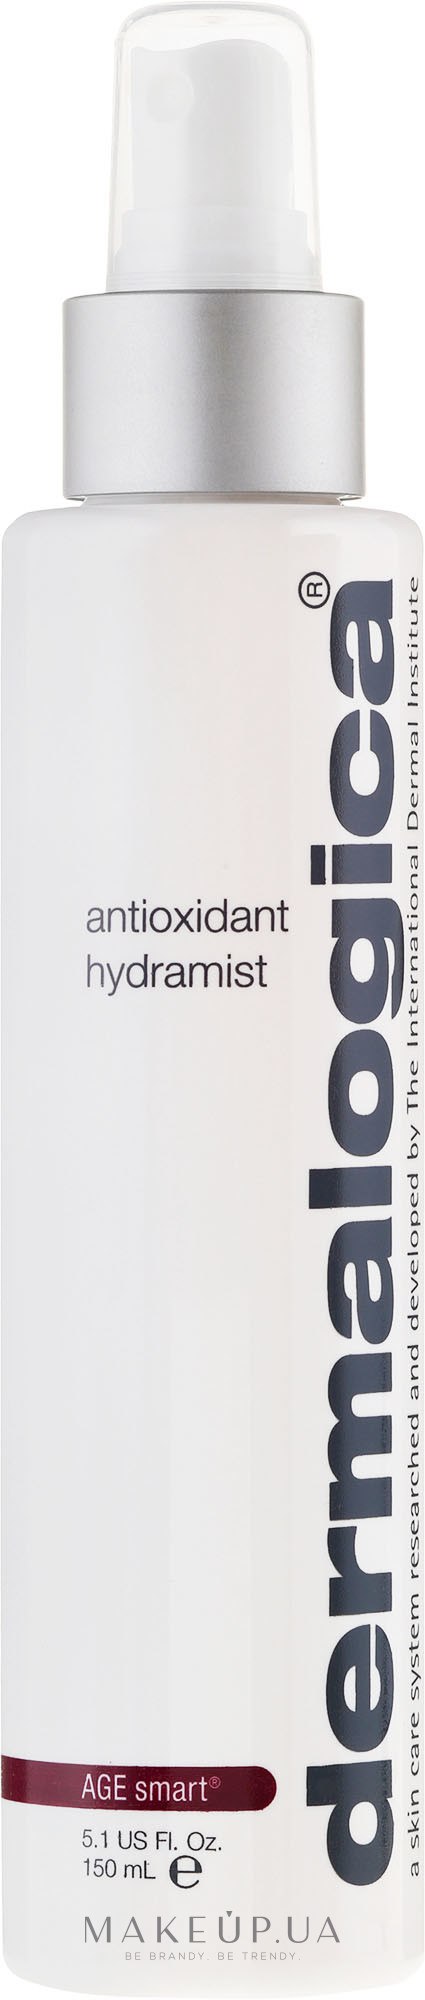 Антиоксидантный увлажняющий спрей для лица - Dermalogica Age Smart Antioxidant Hydramist  — фото 150ml